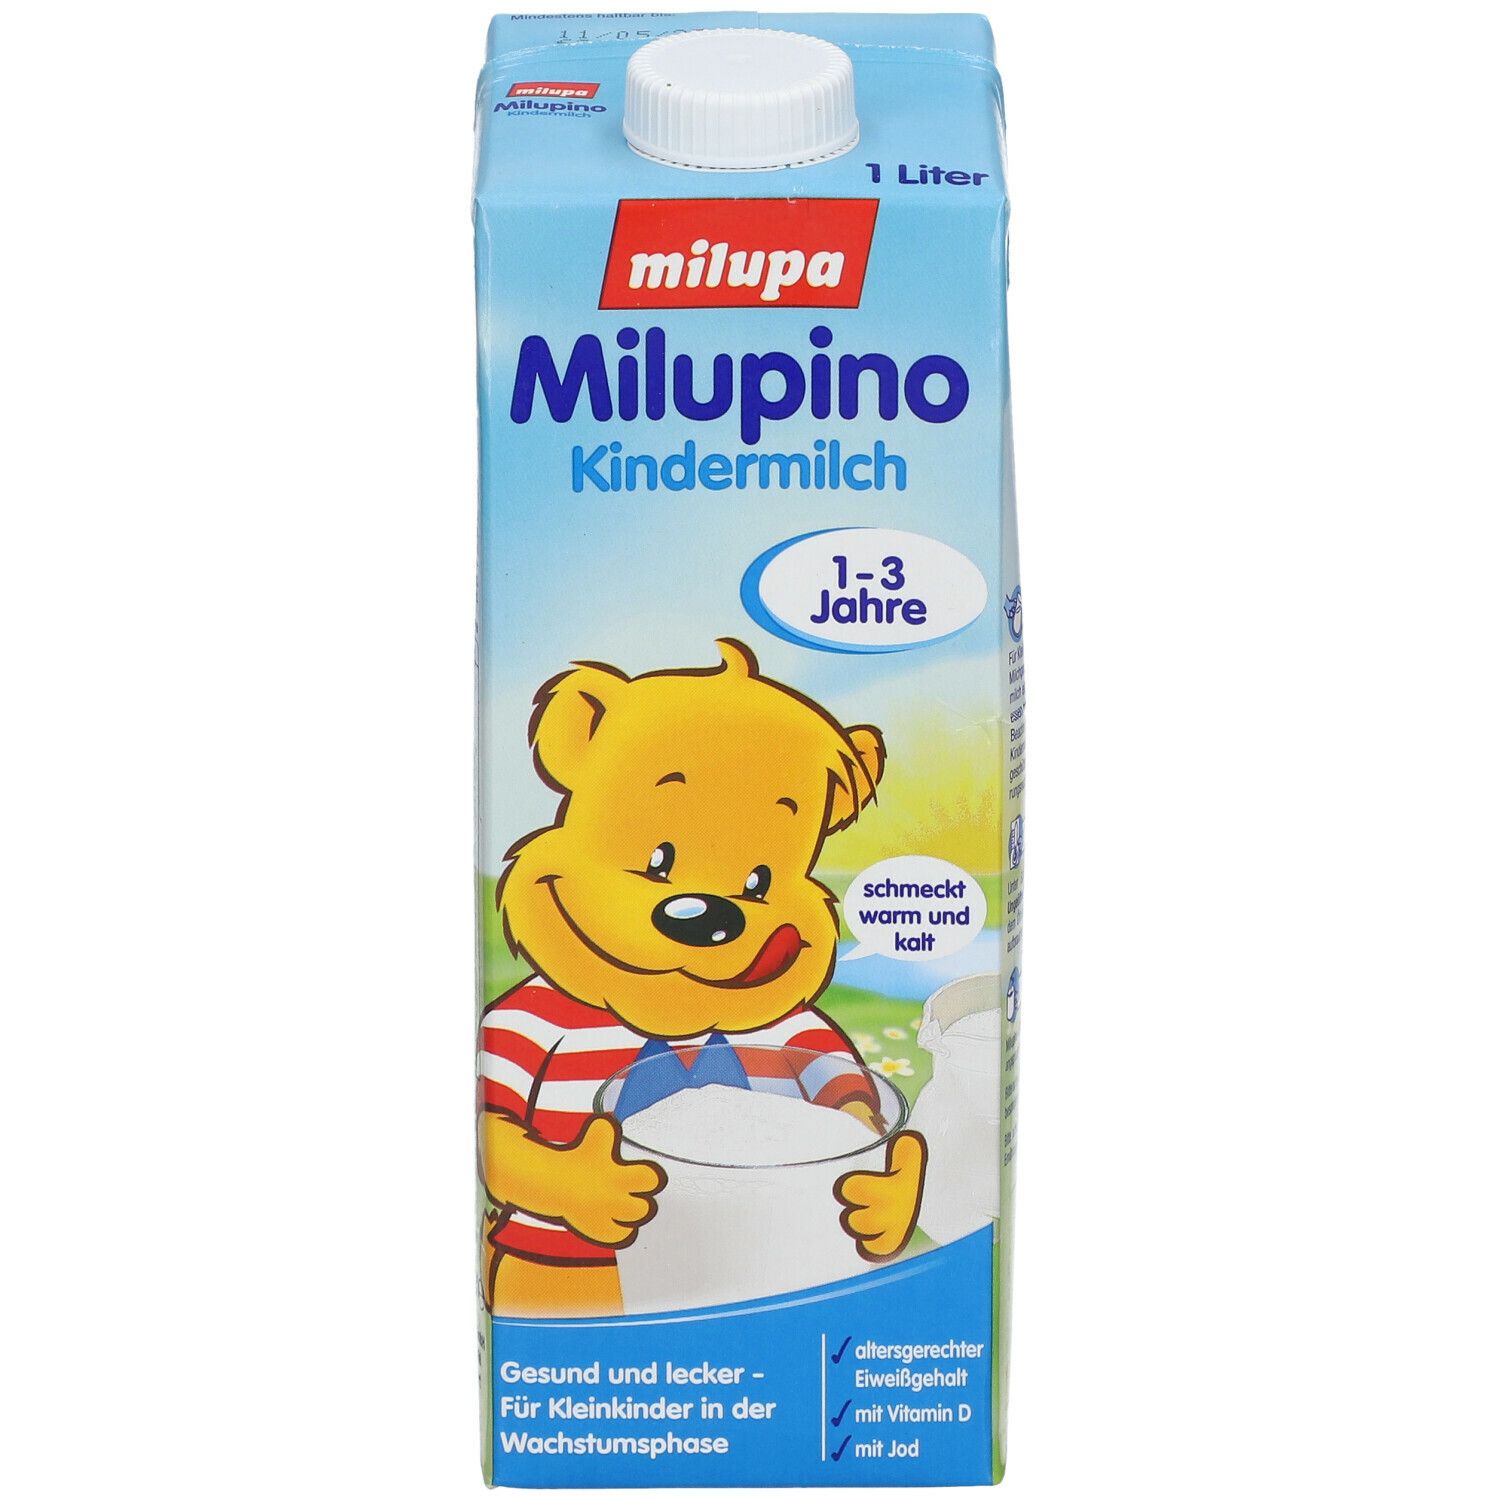 Milupino Kindermilch trinkfertig (1L) | ab 1 Jahr | für Kleinkinder in der Wachstumsphase